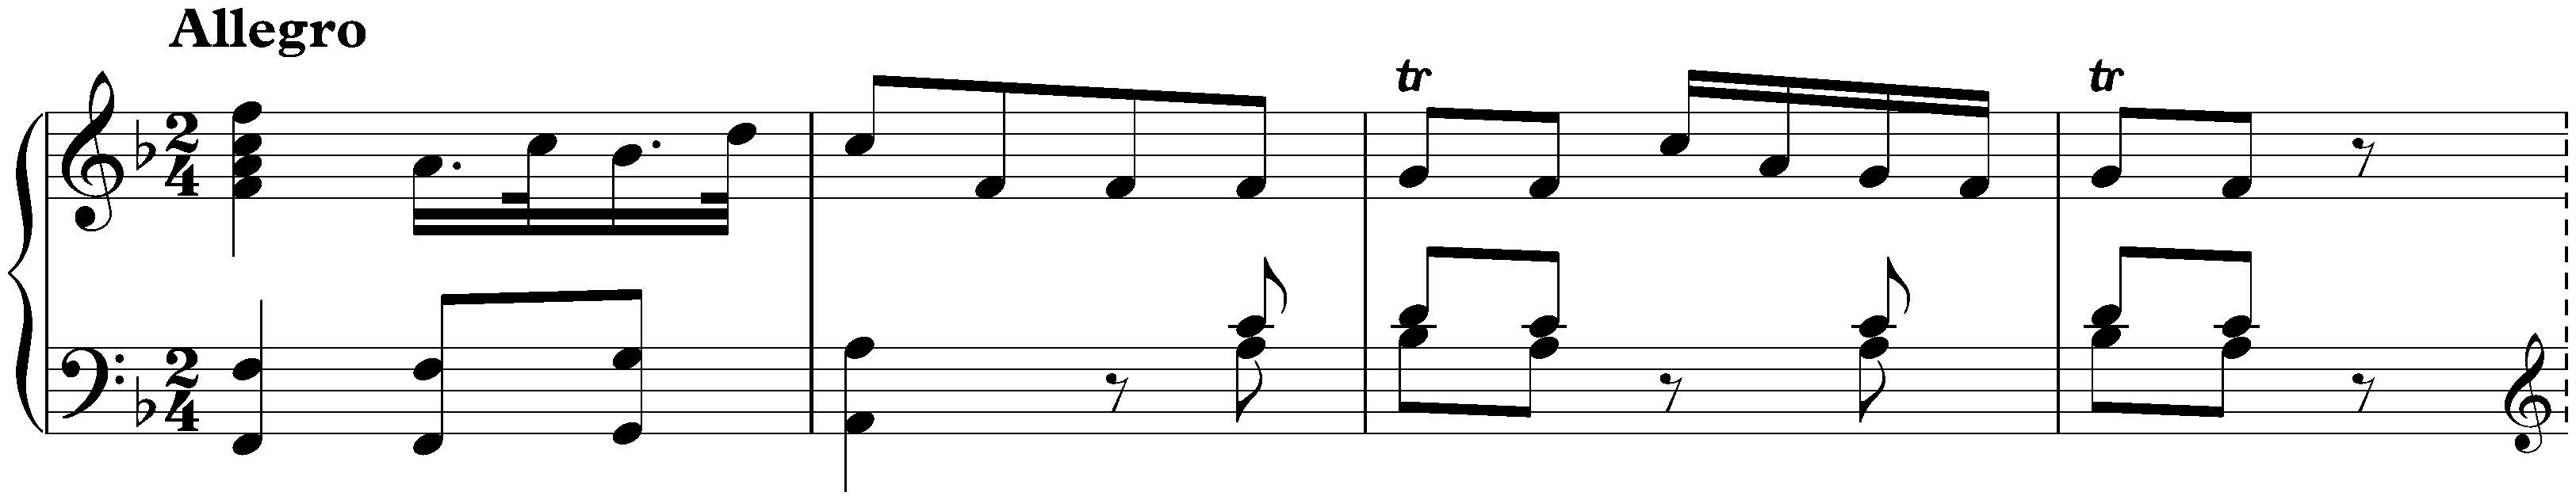 Sonata in F major, Hob. XVI:9; 1. Allegro